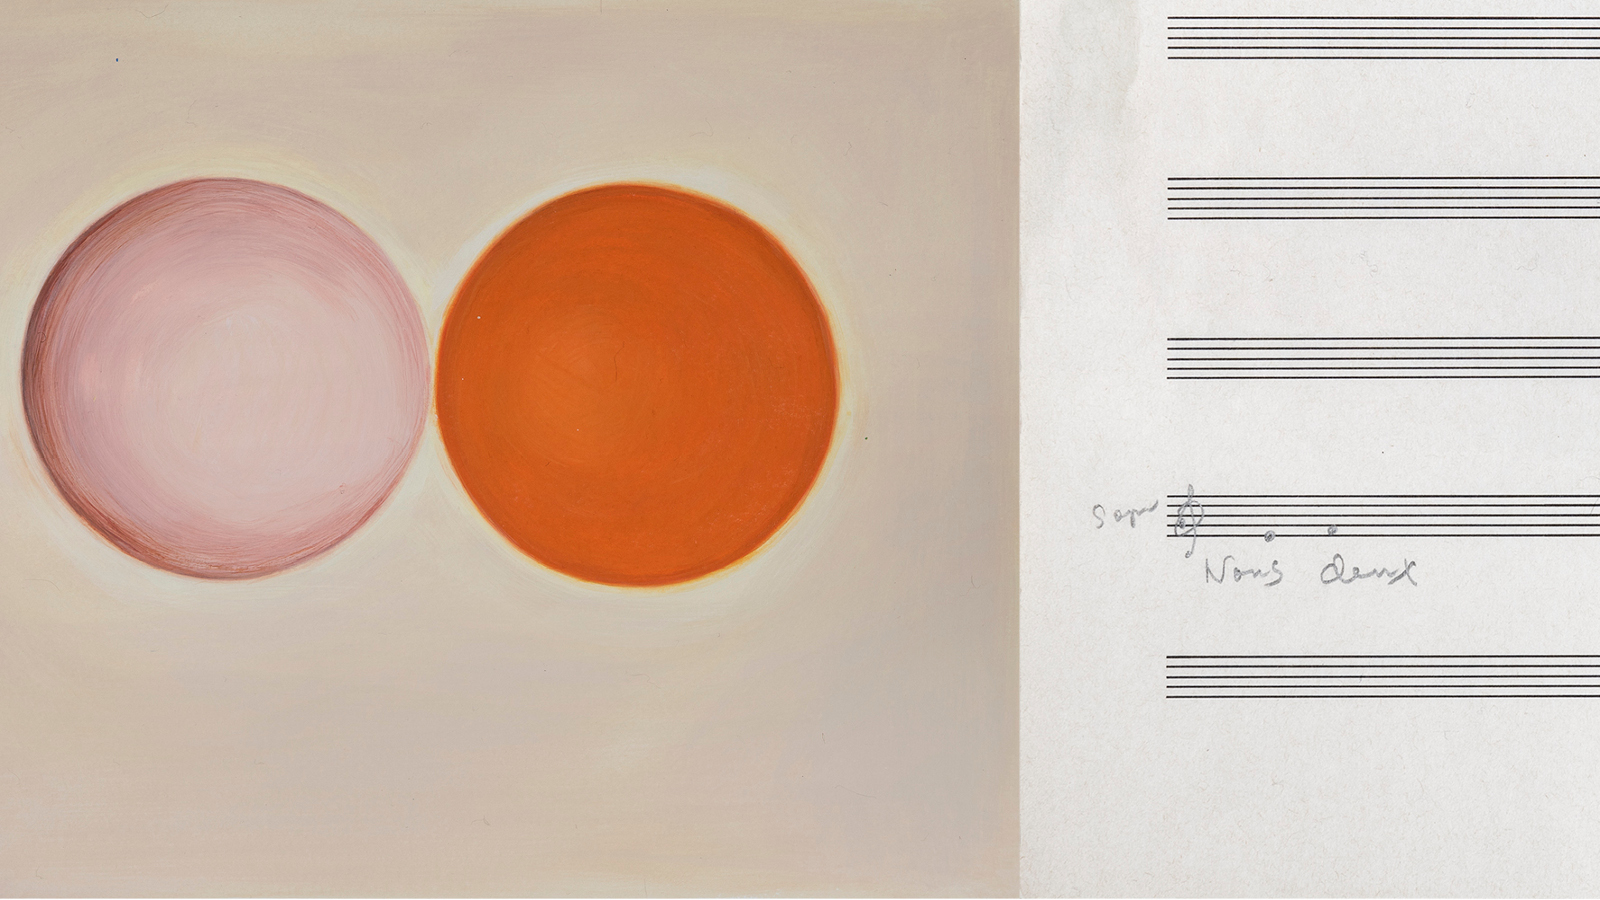 Kuvassa on vasemmalla vaalean ruskealla pohjalla pallot, joista toinen on vaalea ja toinen oranssi. Oikealla on nuottiviivastoa.